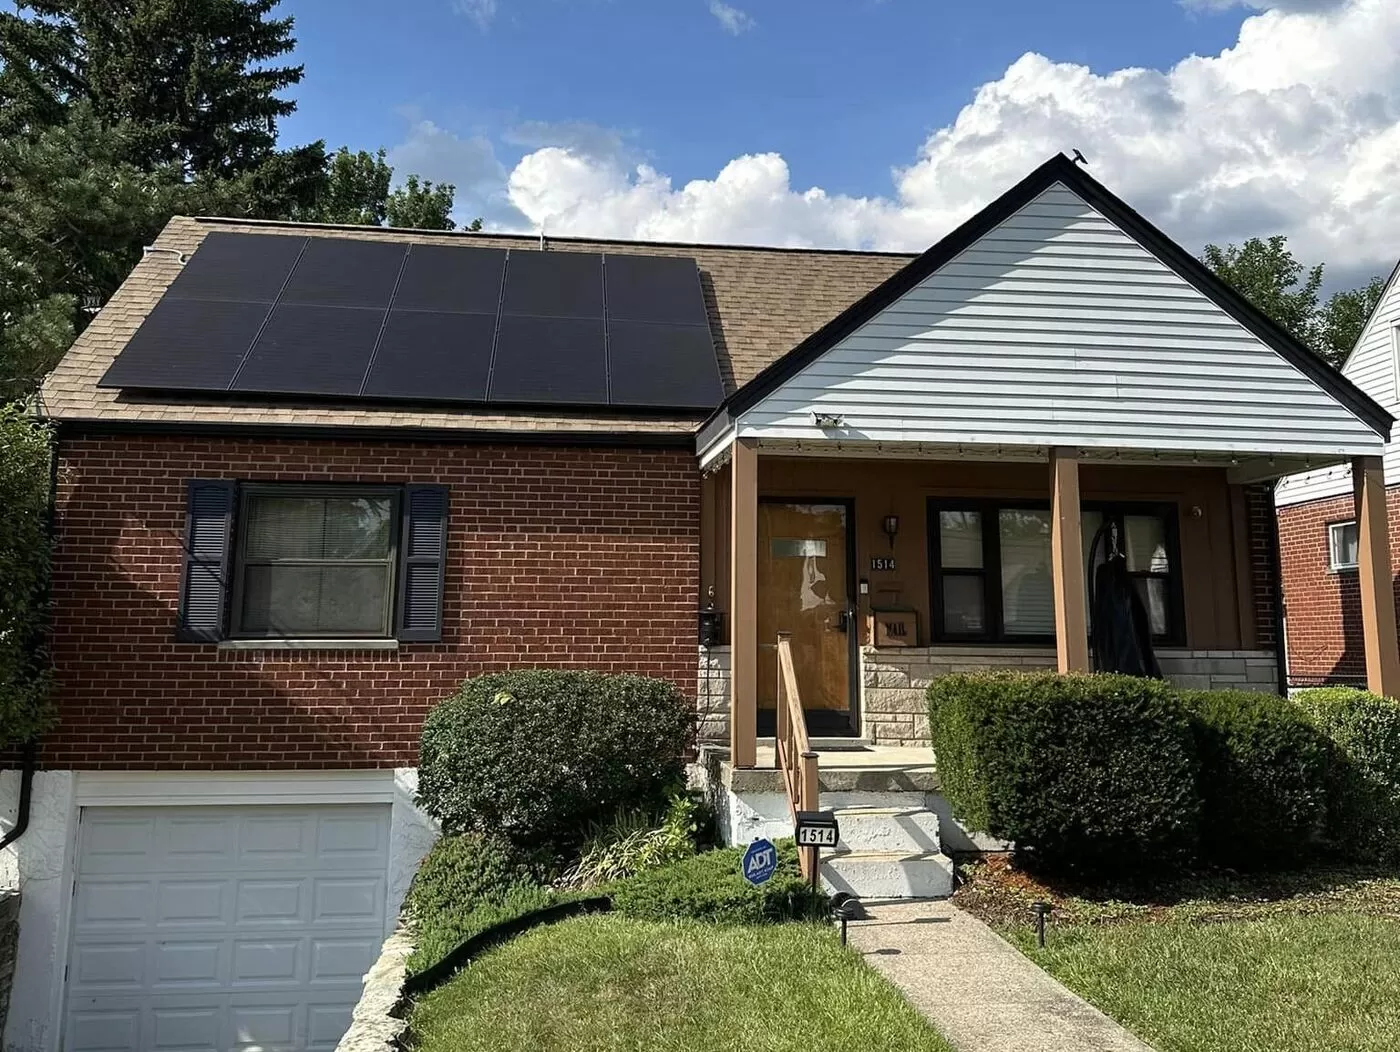 calcular paneles solares para casa - Paneles Solares Shenandoah